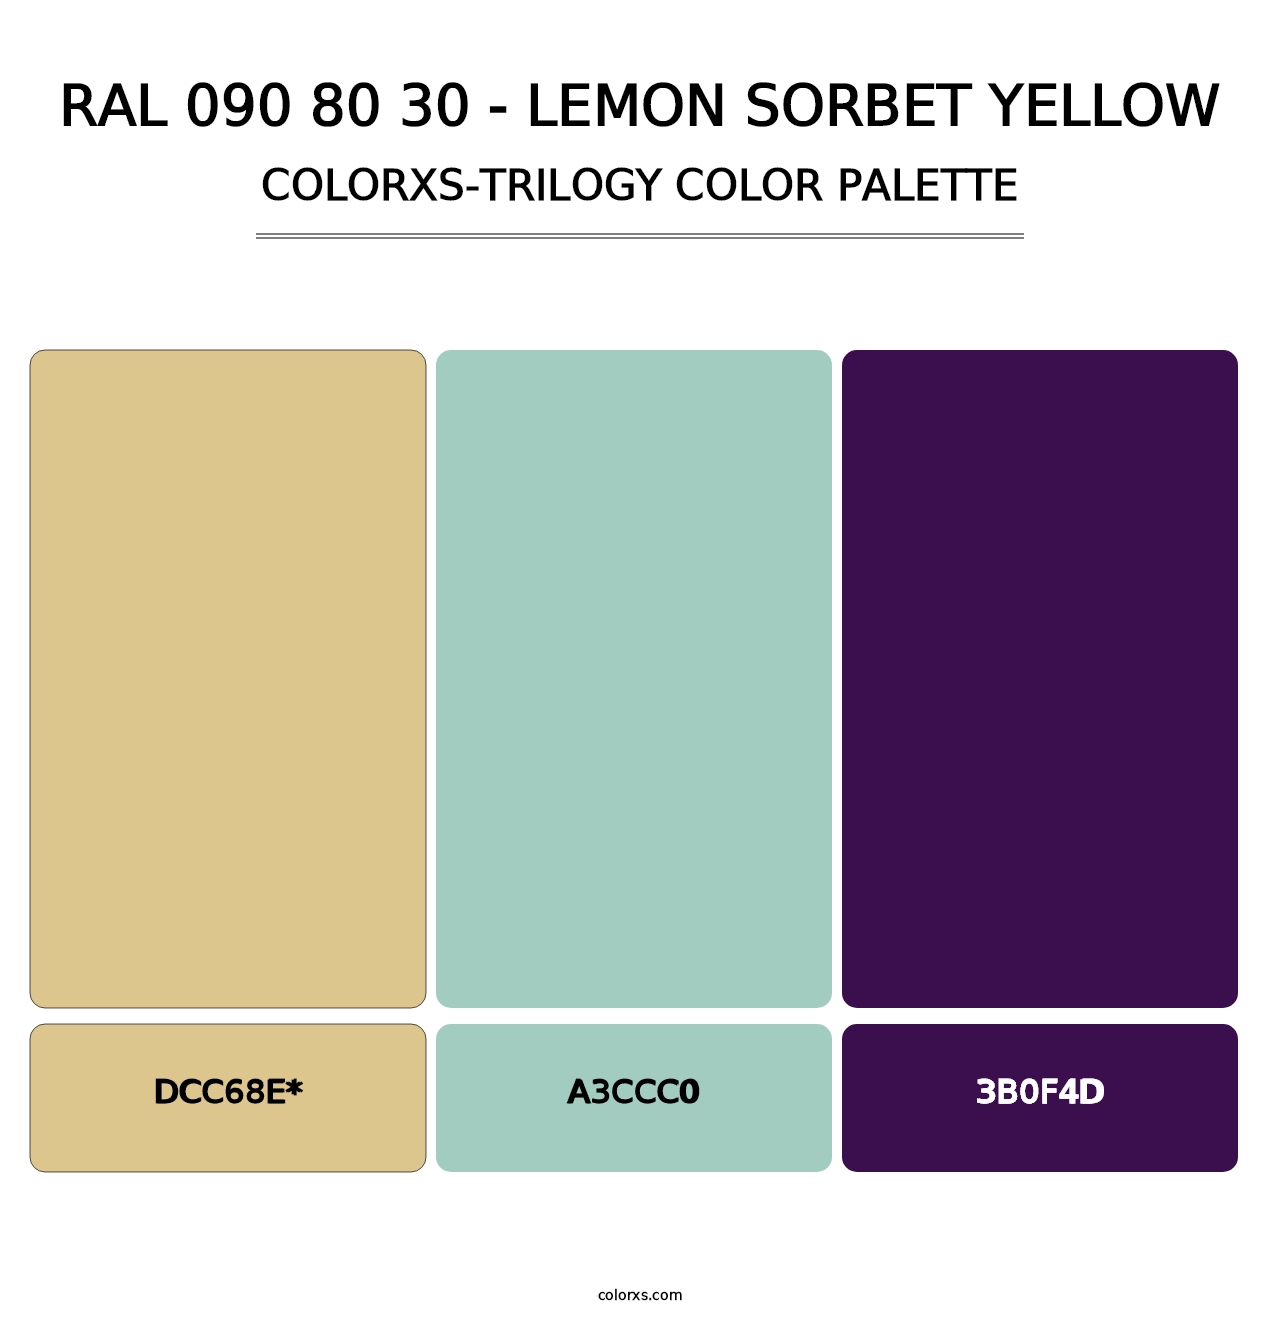 RAL 090 80 30 - Lemon Sorbet Yellow - Colorxs Trilogy Palette